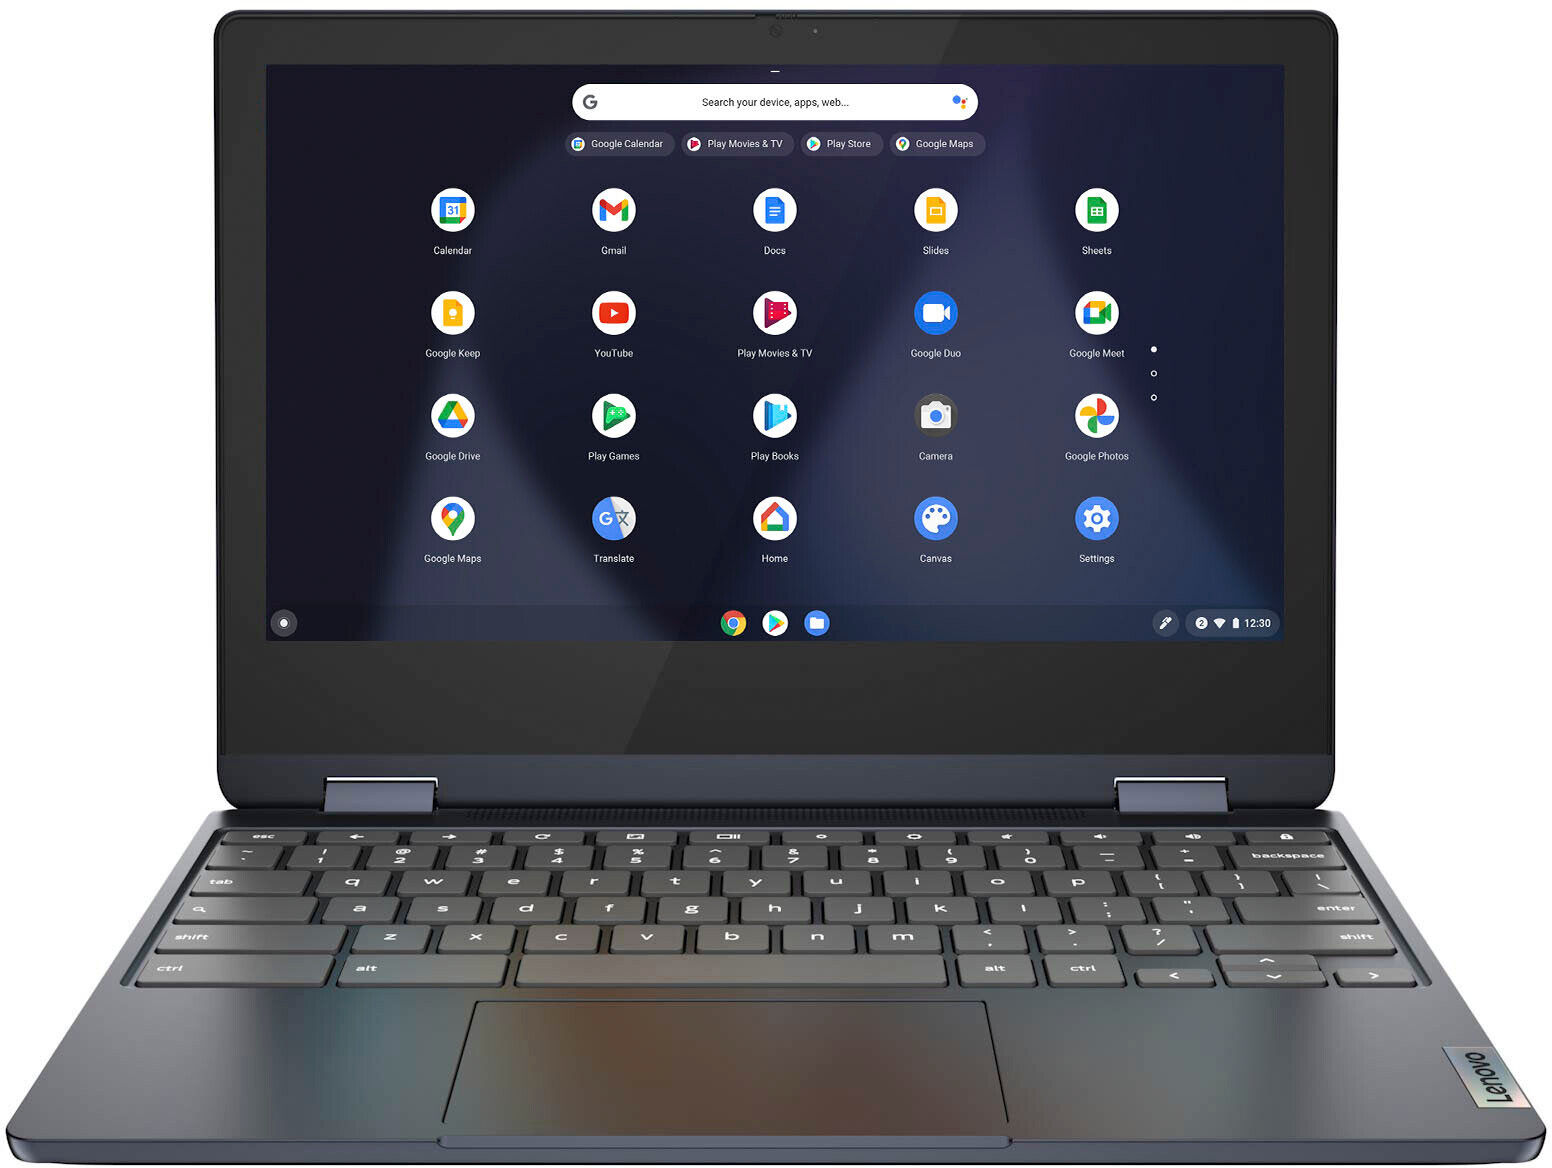 Lenovo - Flex 3 Chromebook 11.6